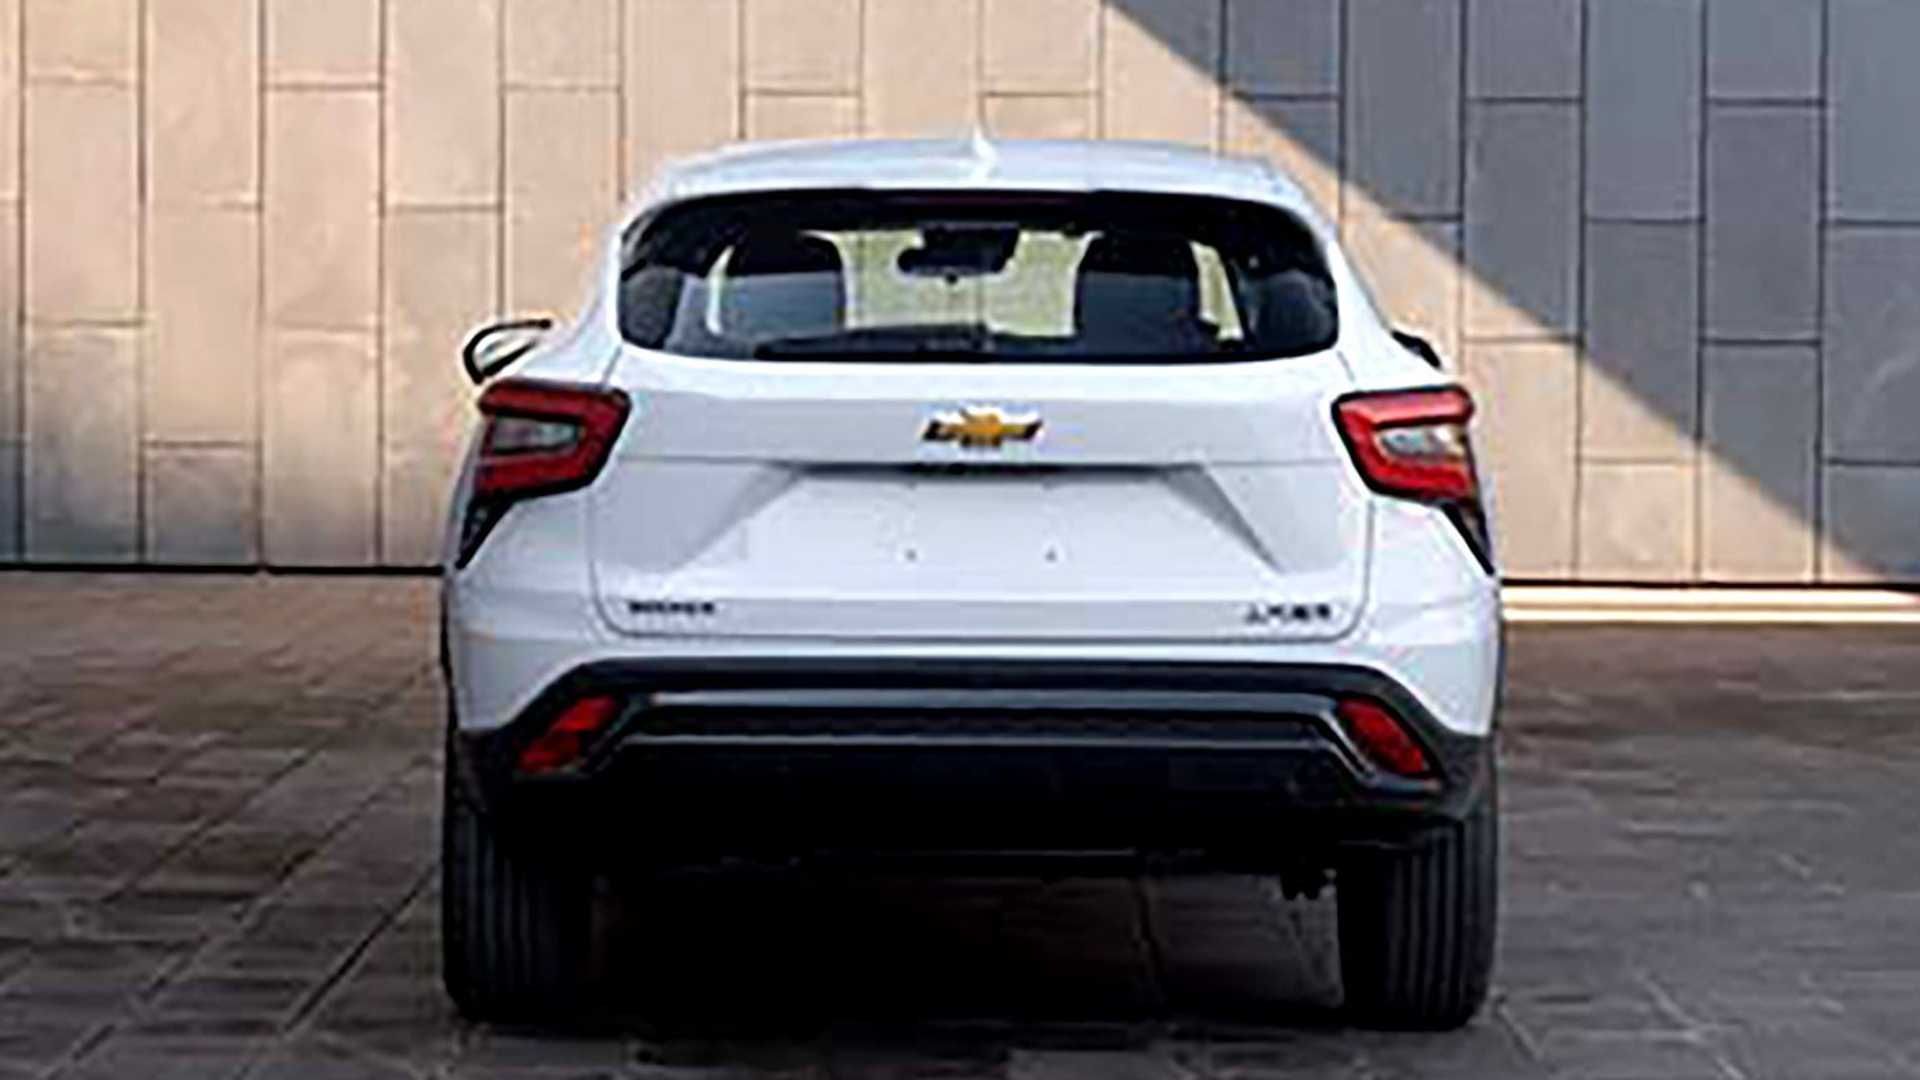 2023 Chevrolet Seeker leaked photo rear view